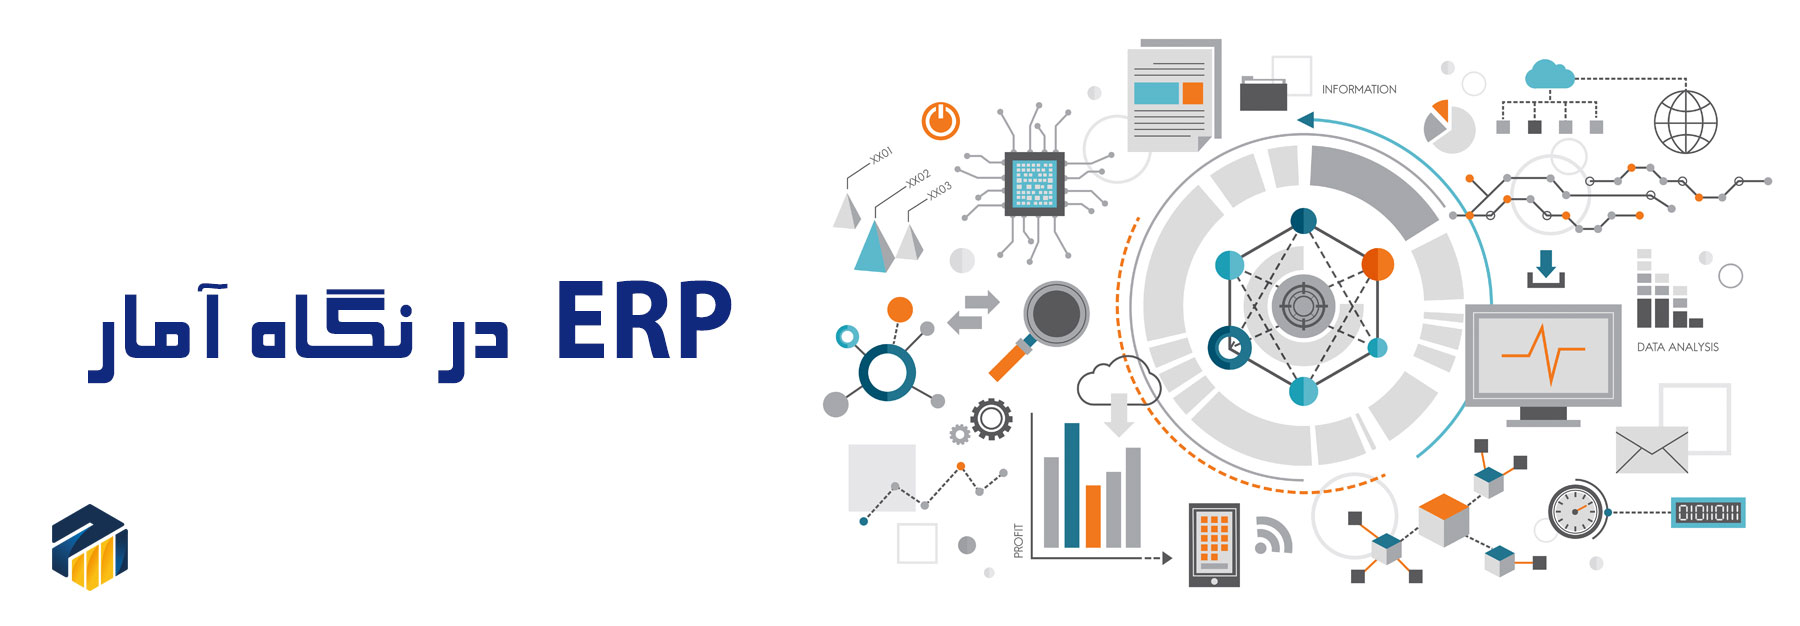 ERP چیست | کاربرد erp در سازمان | اي آر پي چيست | سیستم ای آر پی چیست | نرم افزار ای آر پی چیست | سيستم erp چيست | erp چیست و چه کاربردهایی دارد؟ | همه چیز در مورد erp | erp چیست؟+pdf